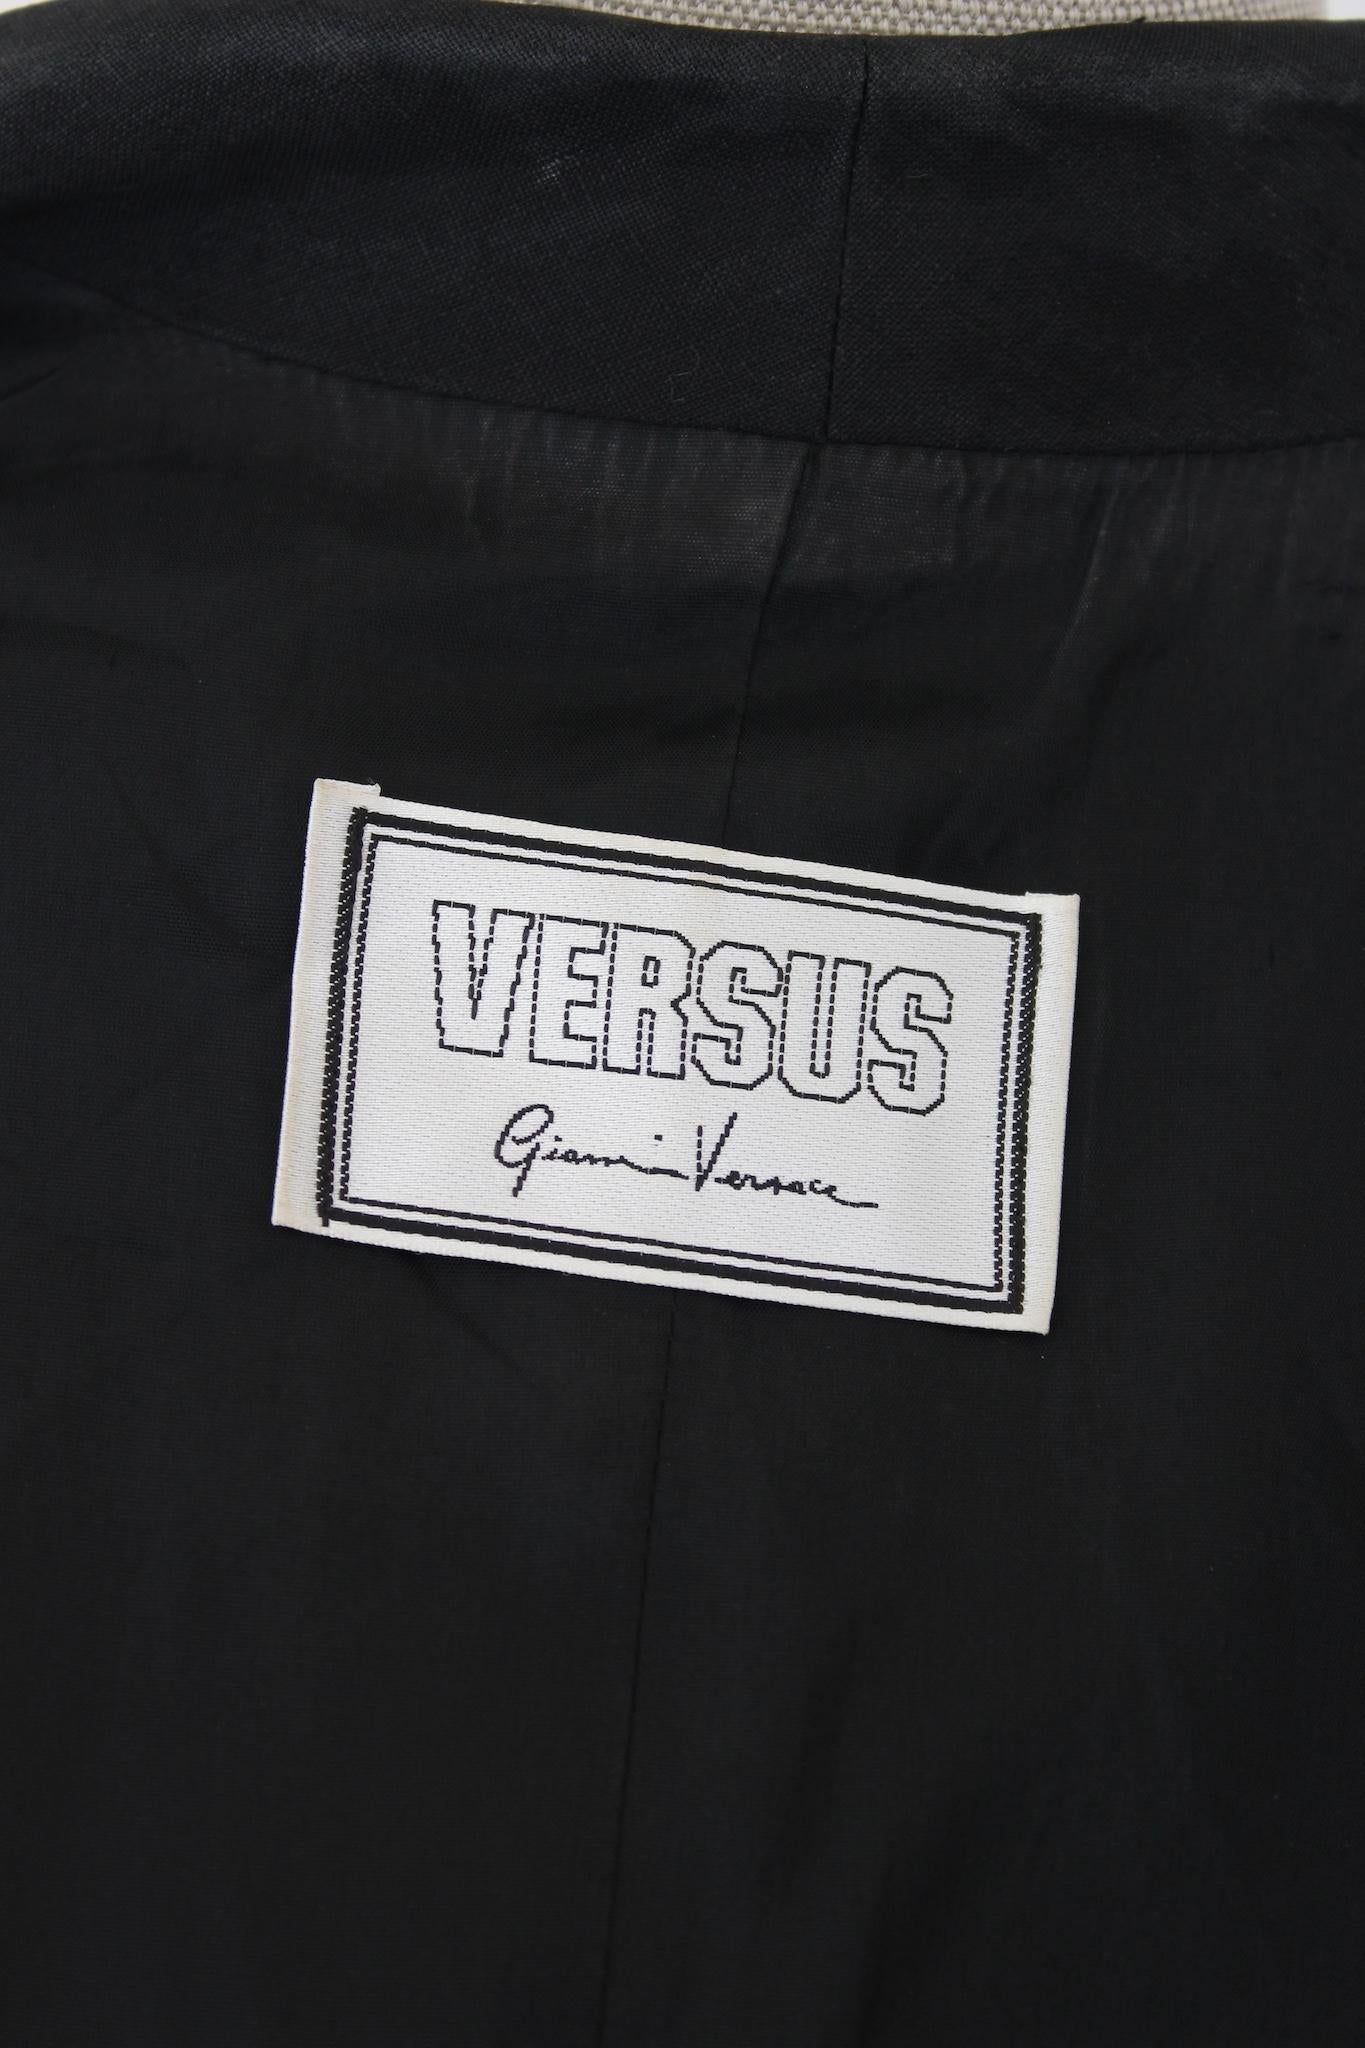 Versus by Gianni Versace Black Linen Short Bolero Jacket 1990s 2